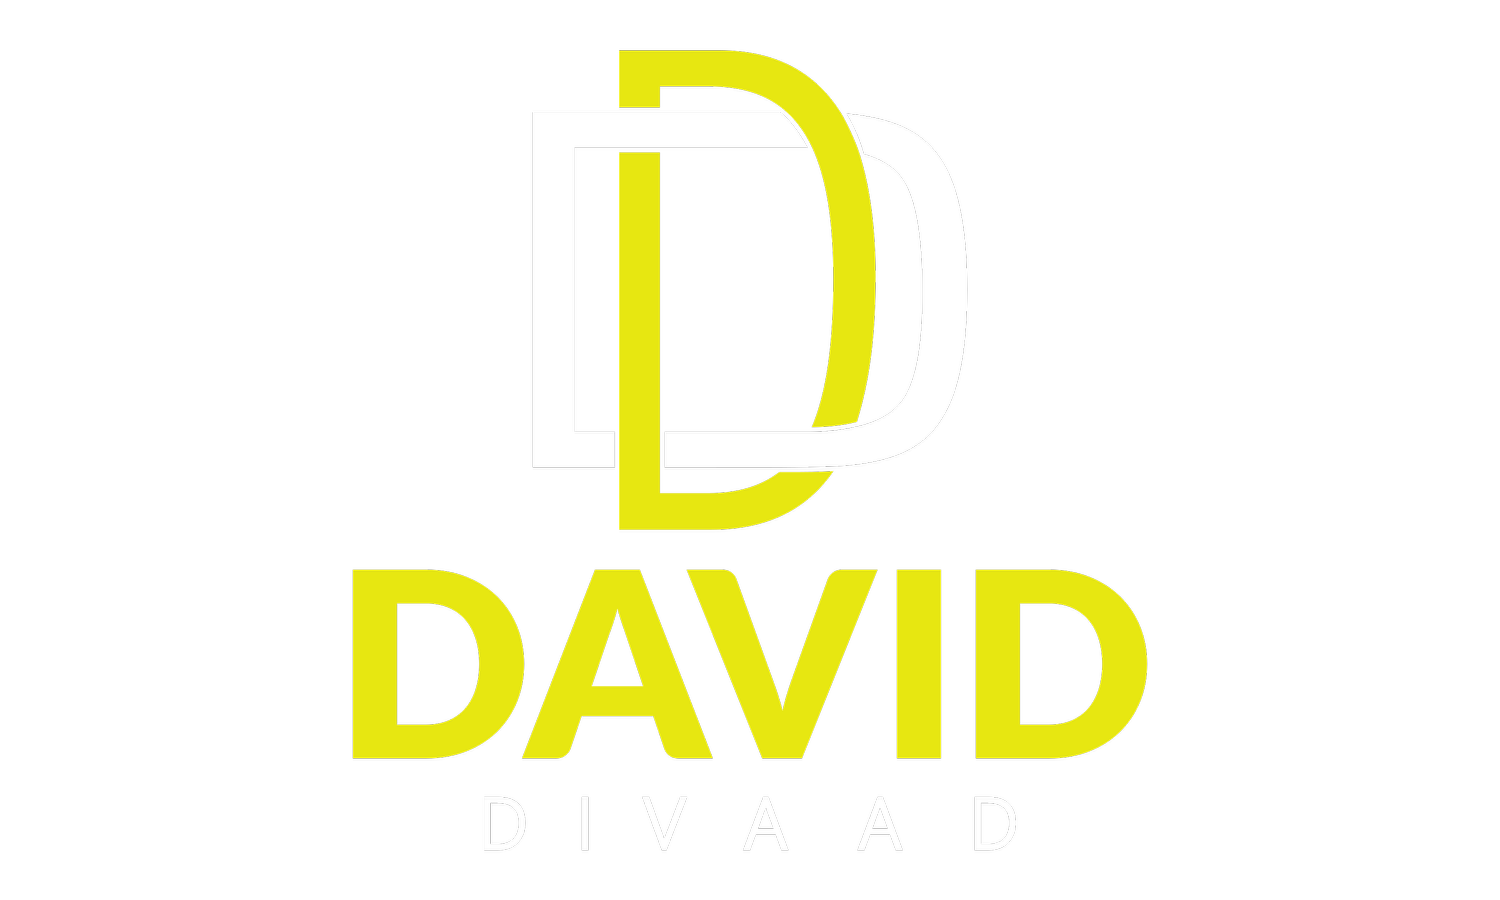 David Divaad